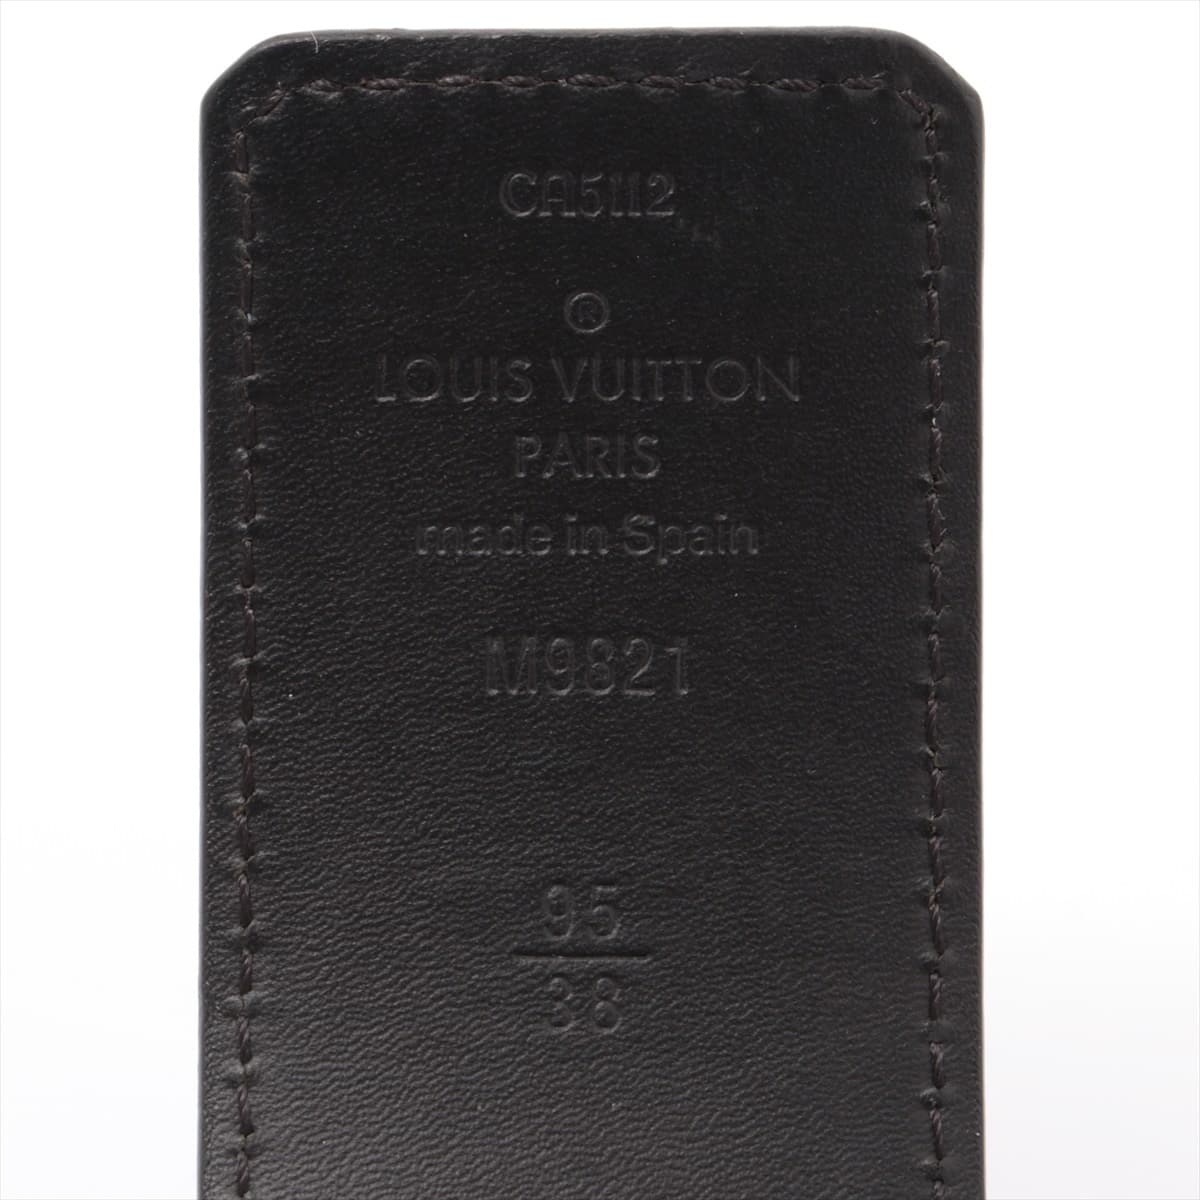 Louis Vuitton M9821 Electrics CENTURE LV Initial CA5112 Belt 38/95 PVC & leather Black × Brown